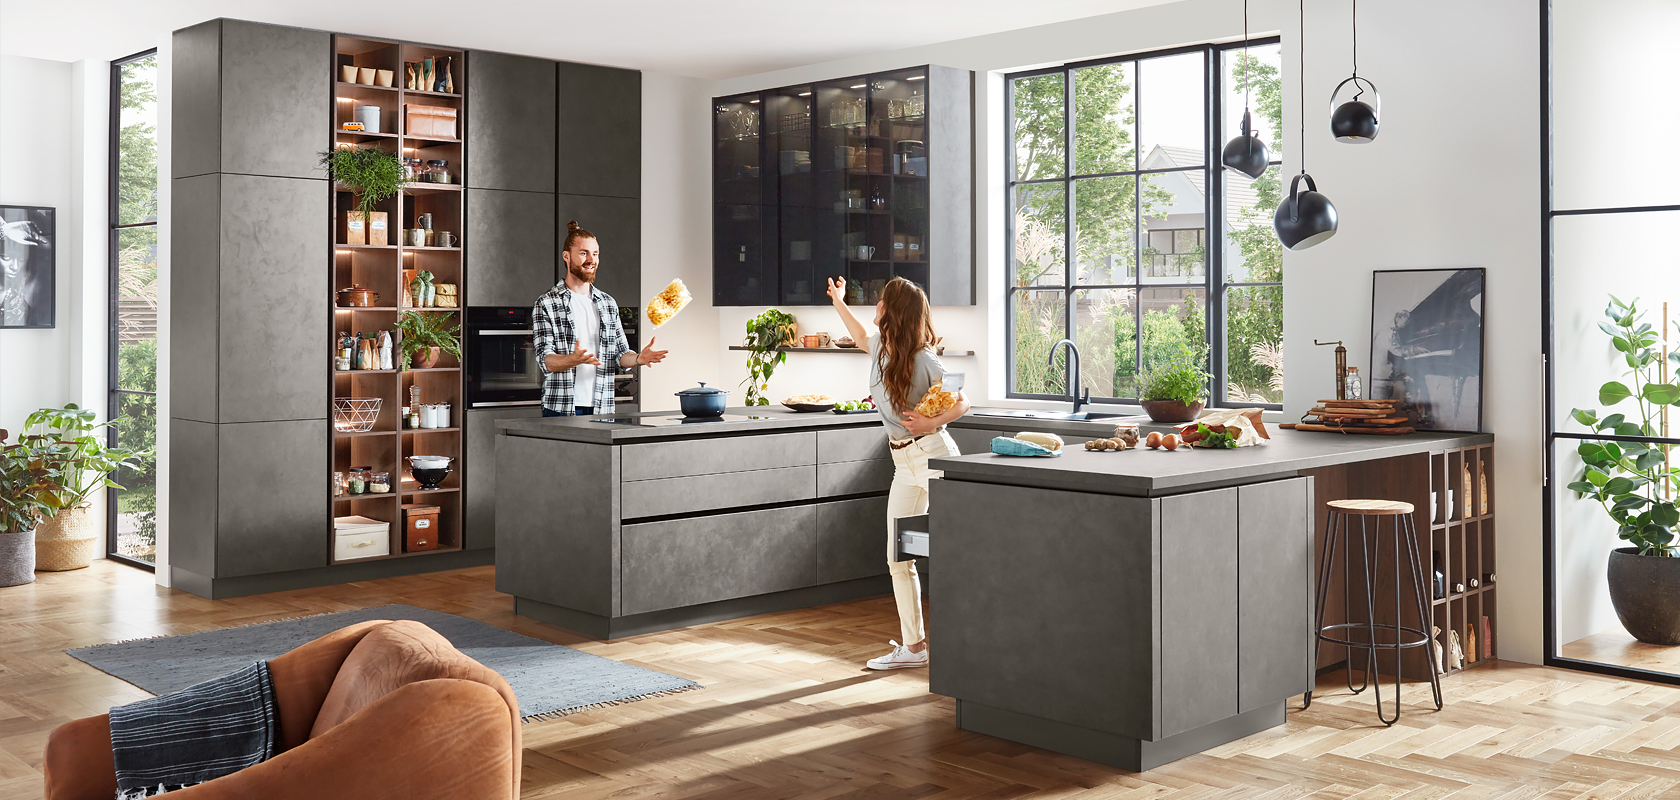 Diseño de cocina moderna con gabinetes grises elegantes, electrodomésticos integrados y una isla central. Una pareja disfruta cocinando en el interior bien iluminado y espacioso.